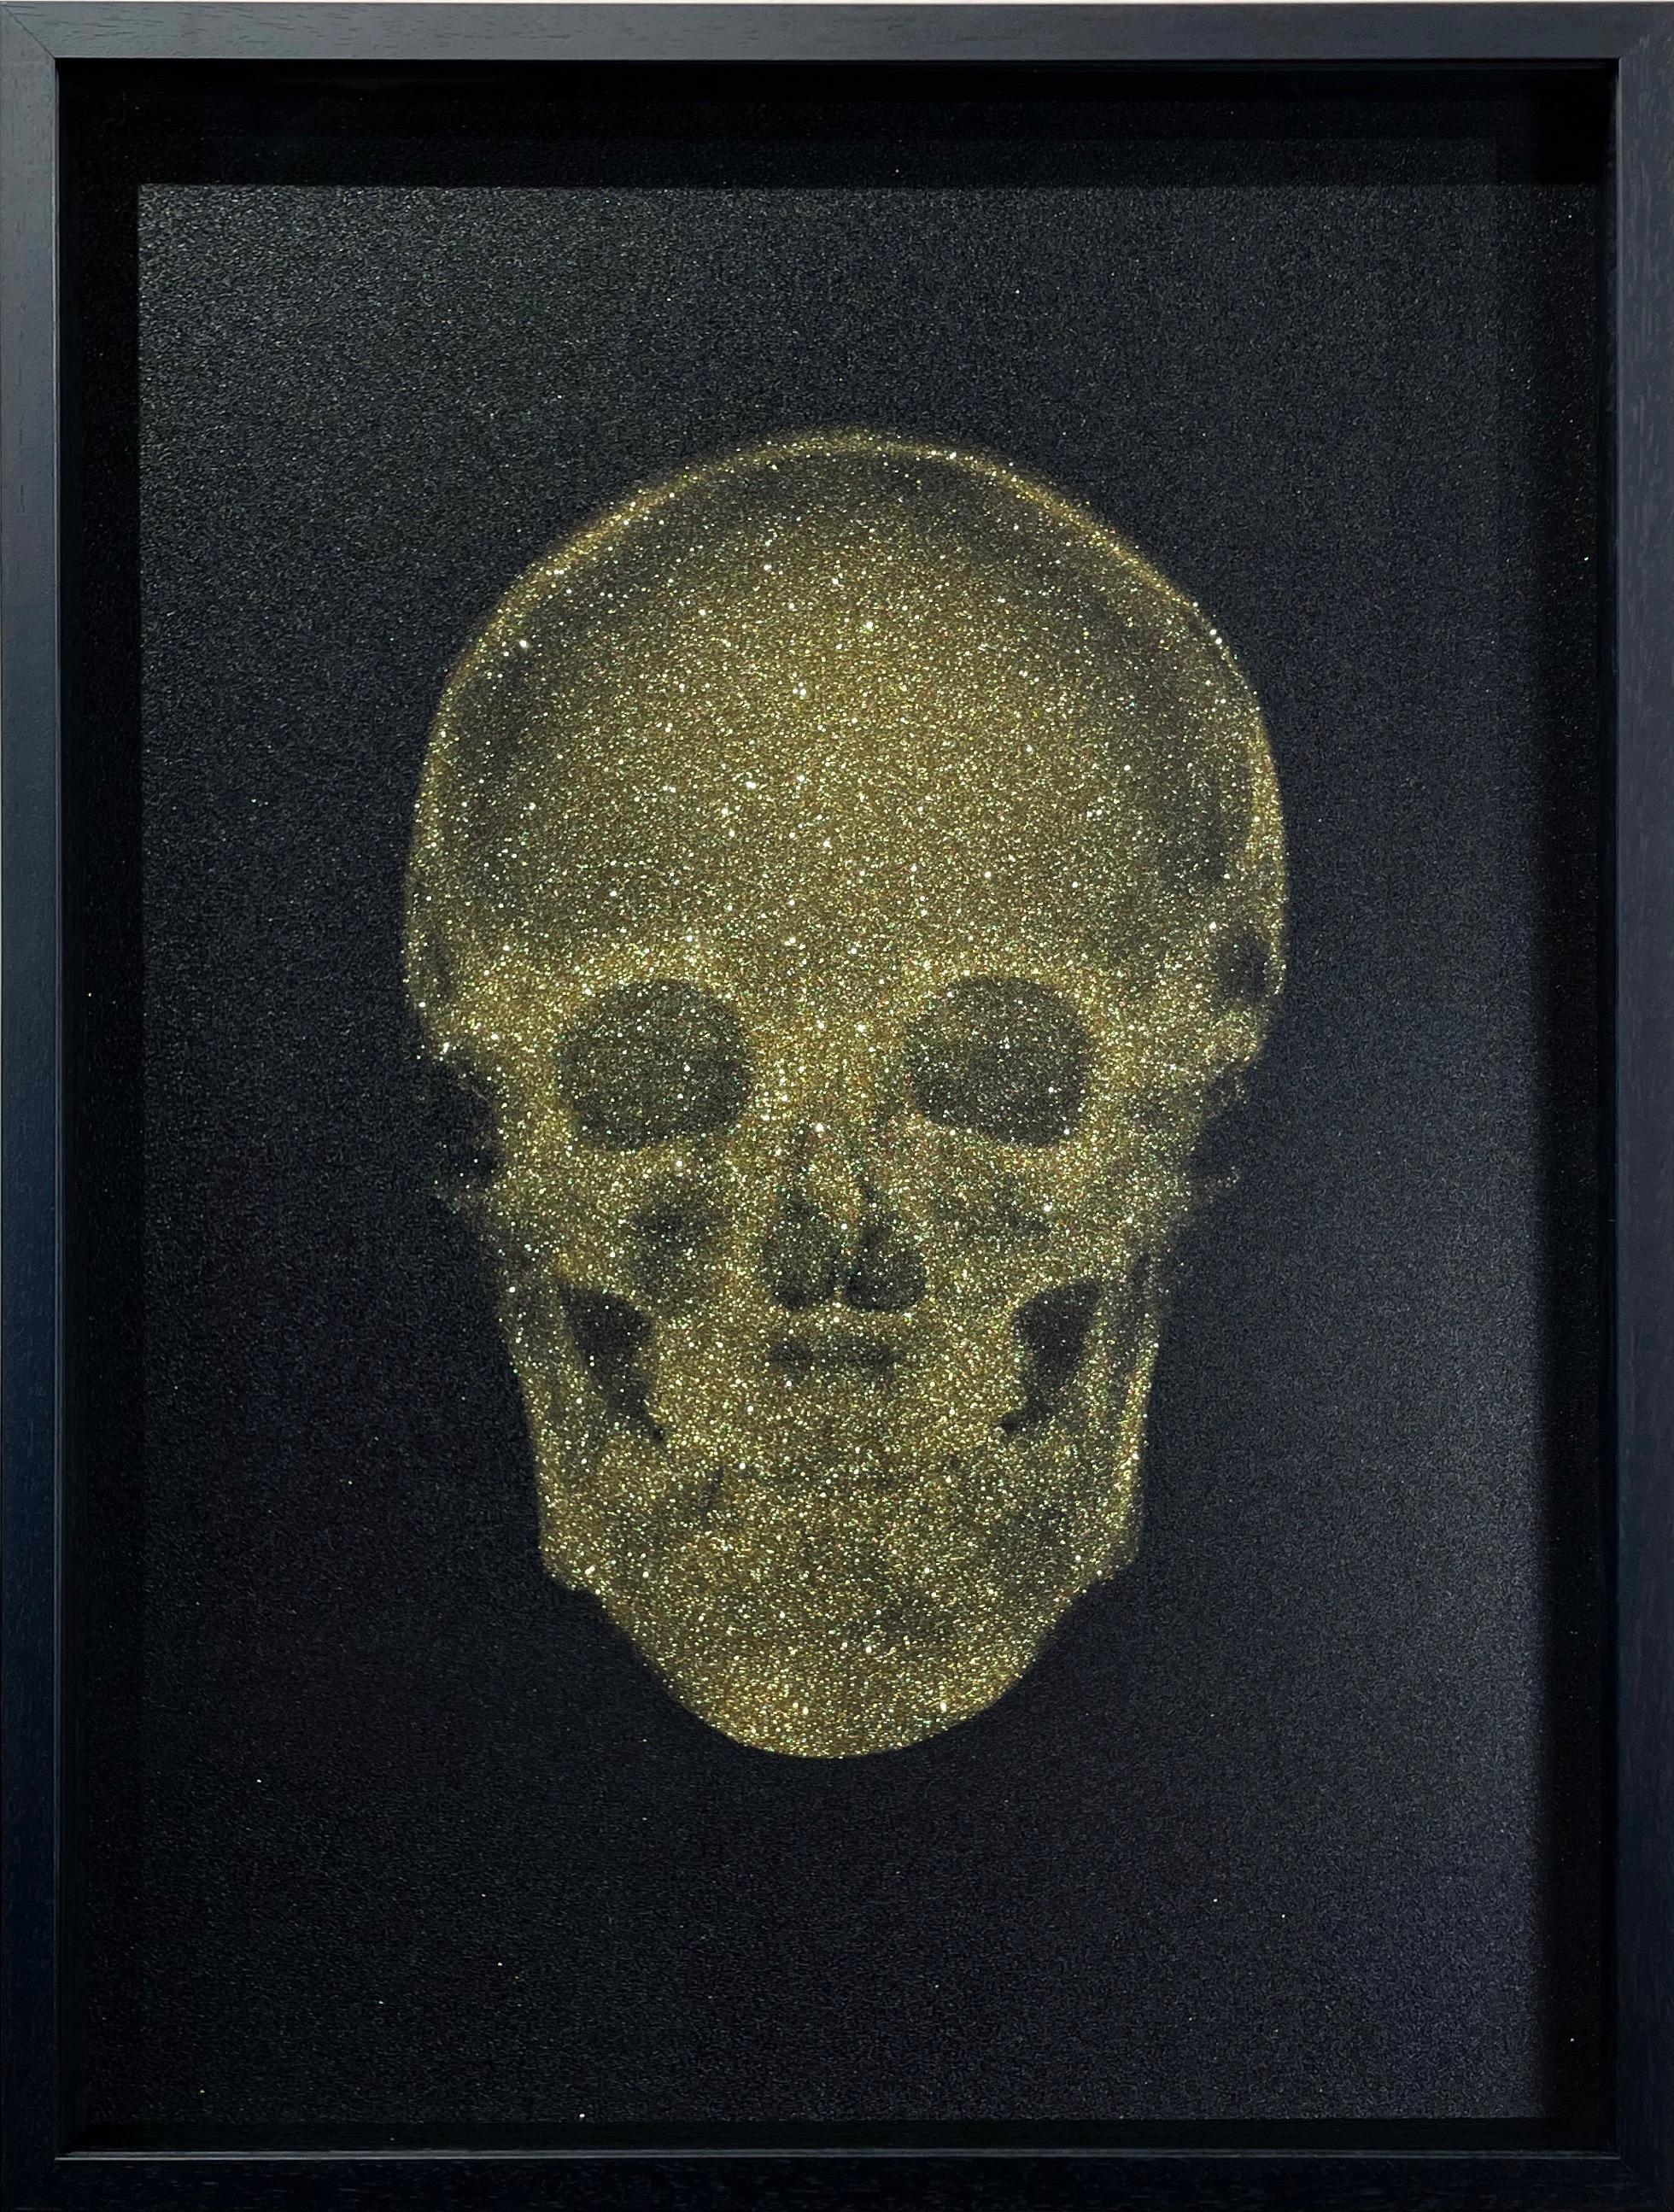 Kristallschädel (Gold auf Schwarz) – Photograph von Nick Veasey